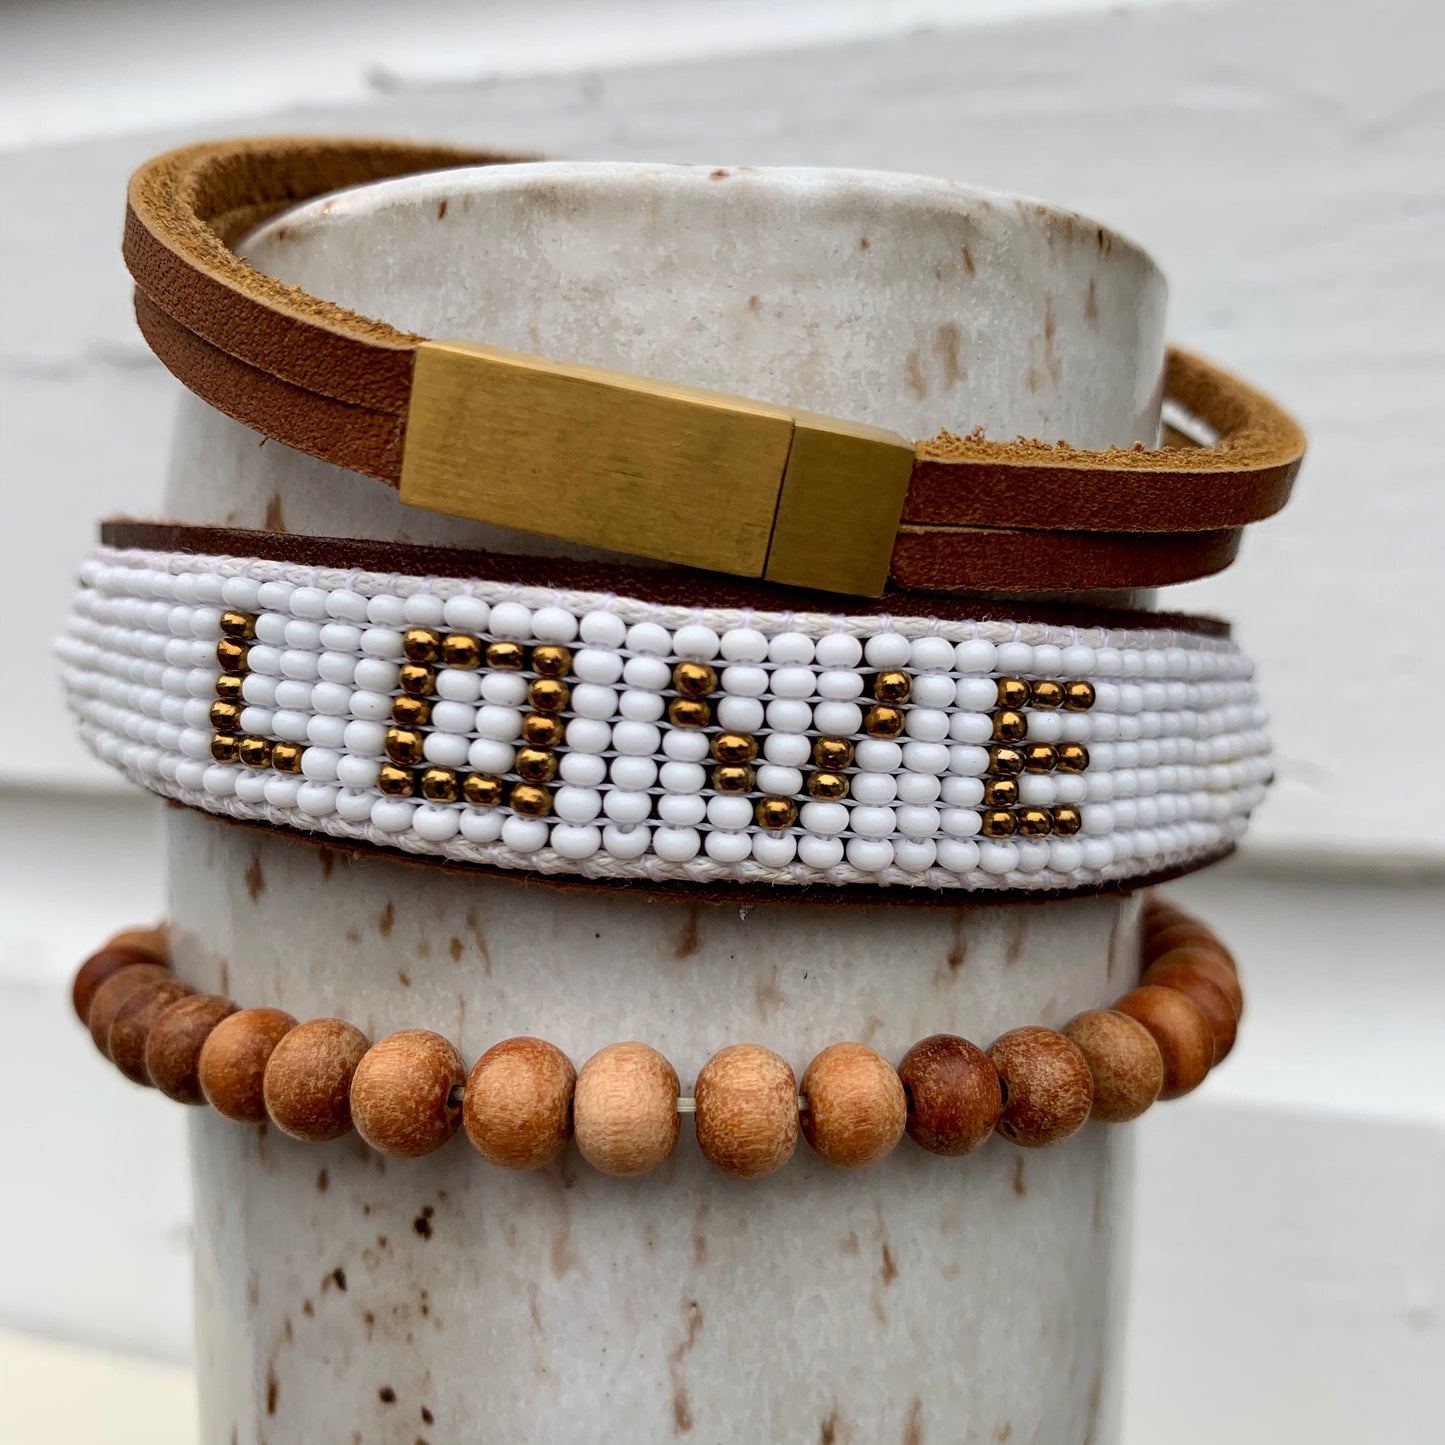 LOVE is Project - Bindi Love Bracelet